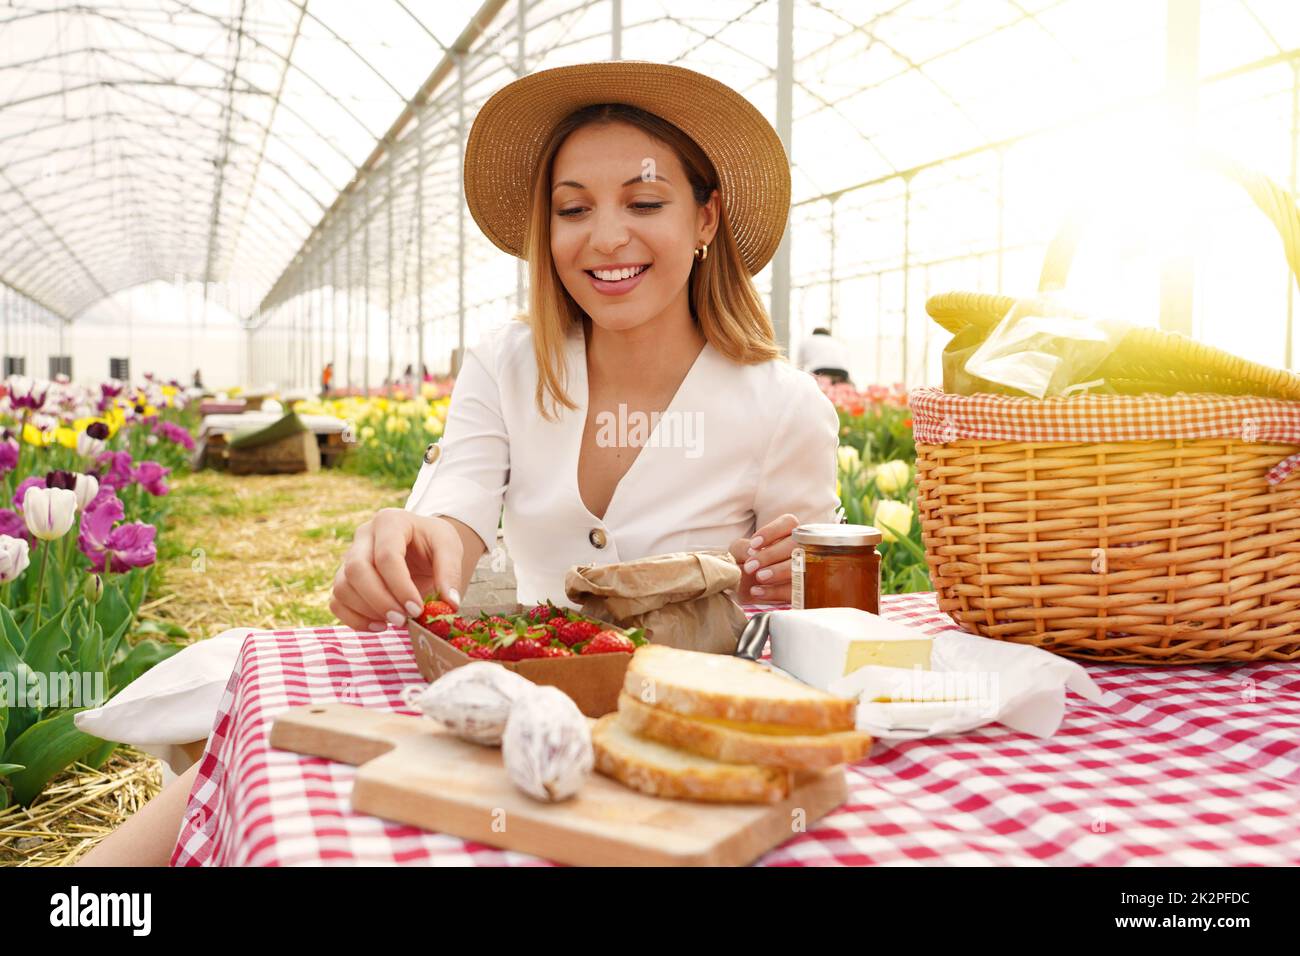 Lächelnd schönes Mädchen mit Picknick. Junge Frau nimmt eine Erdbeere. Frische Ernte und Null-Kilometer-Lebensmittel im Land im Frühling. Stockfoto